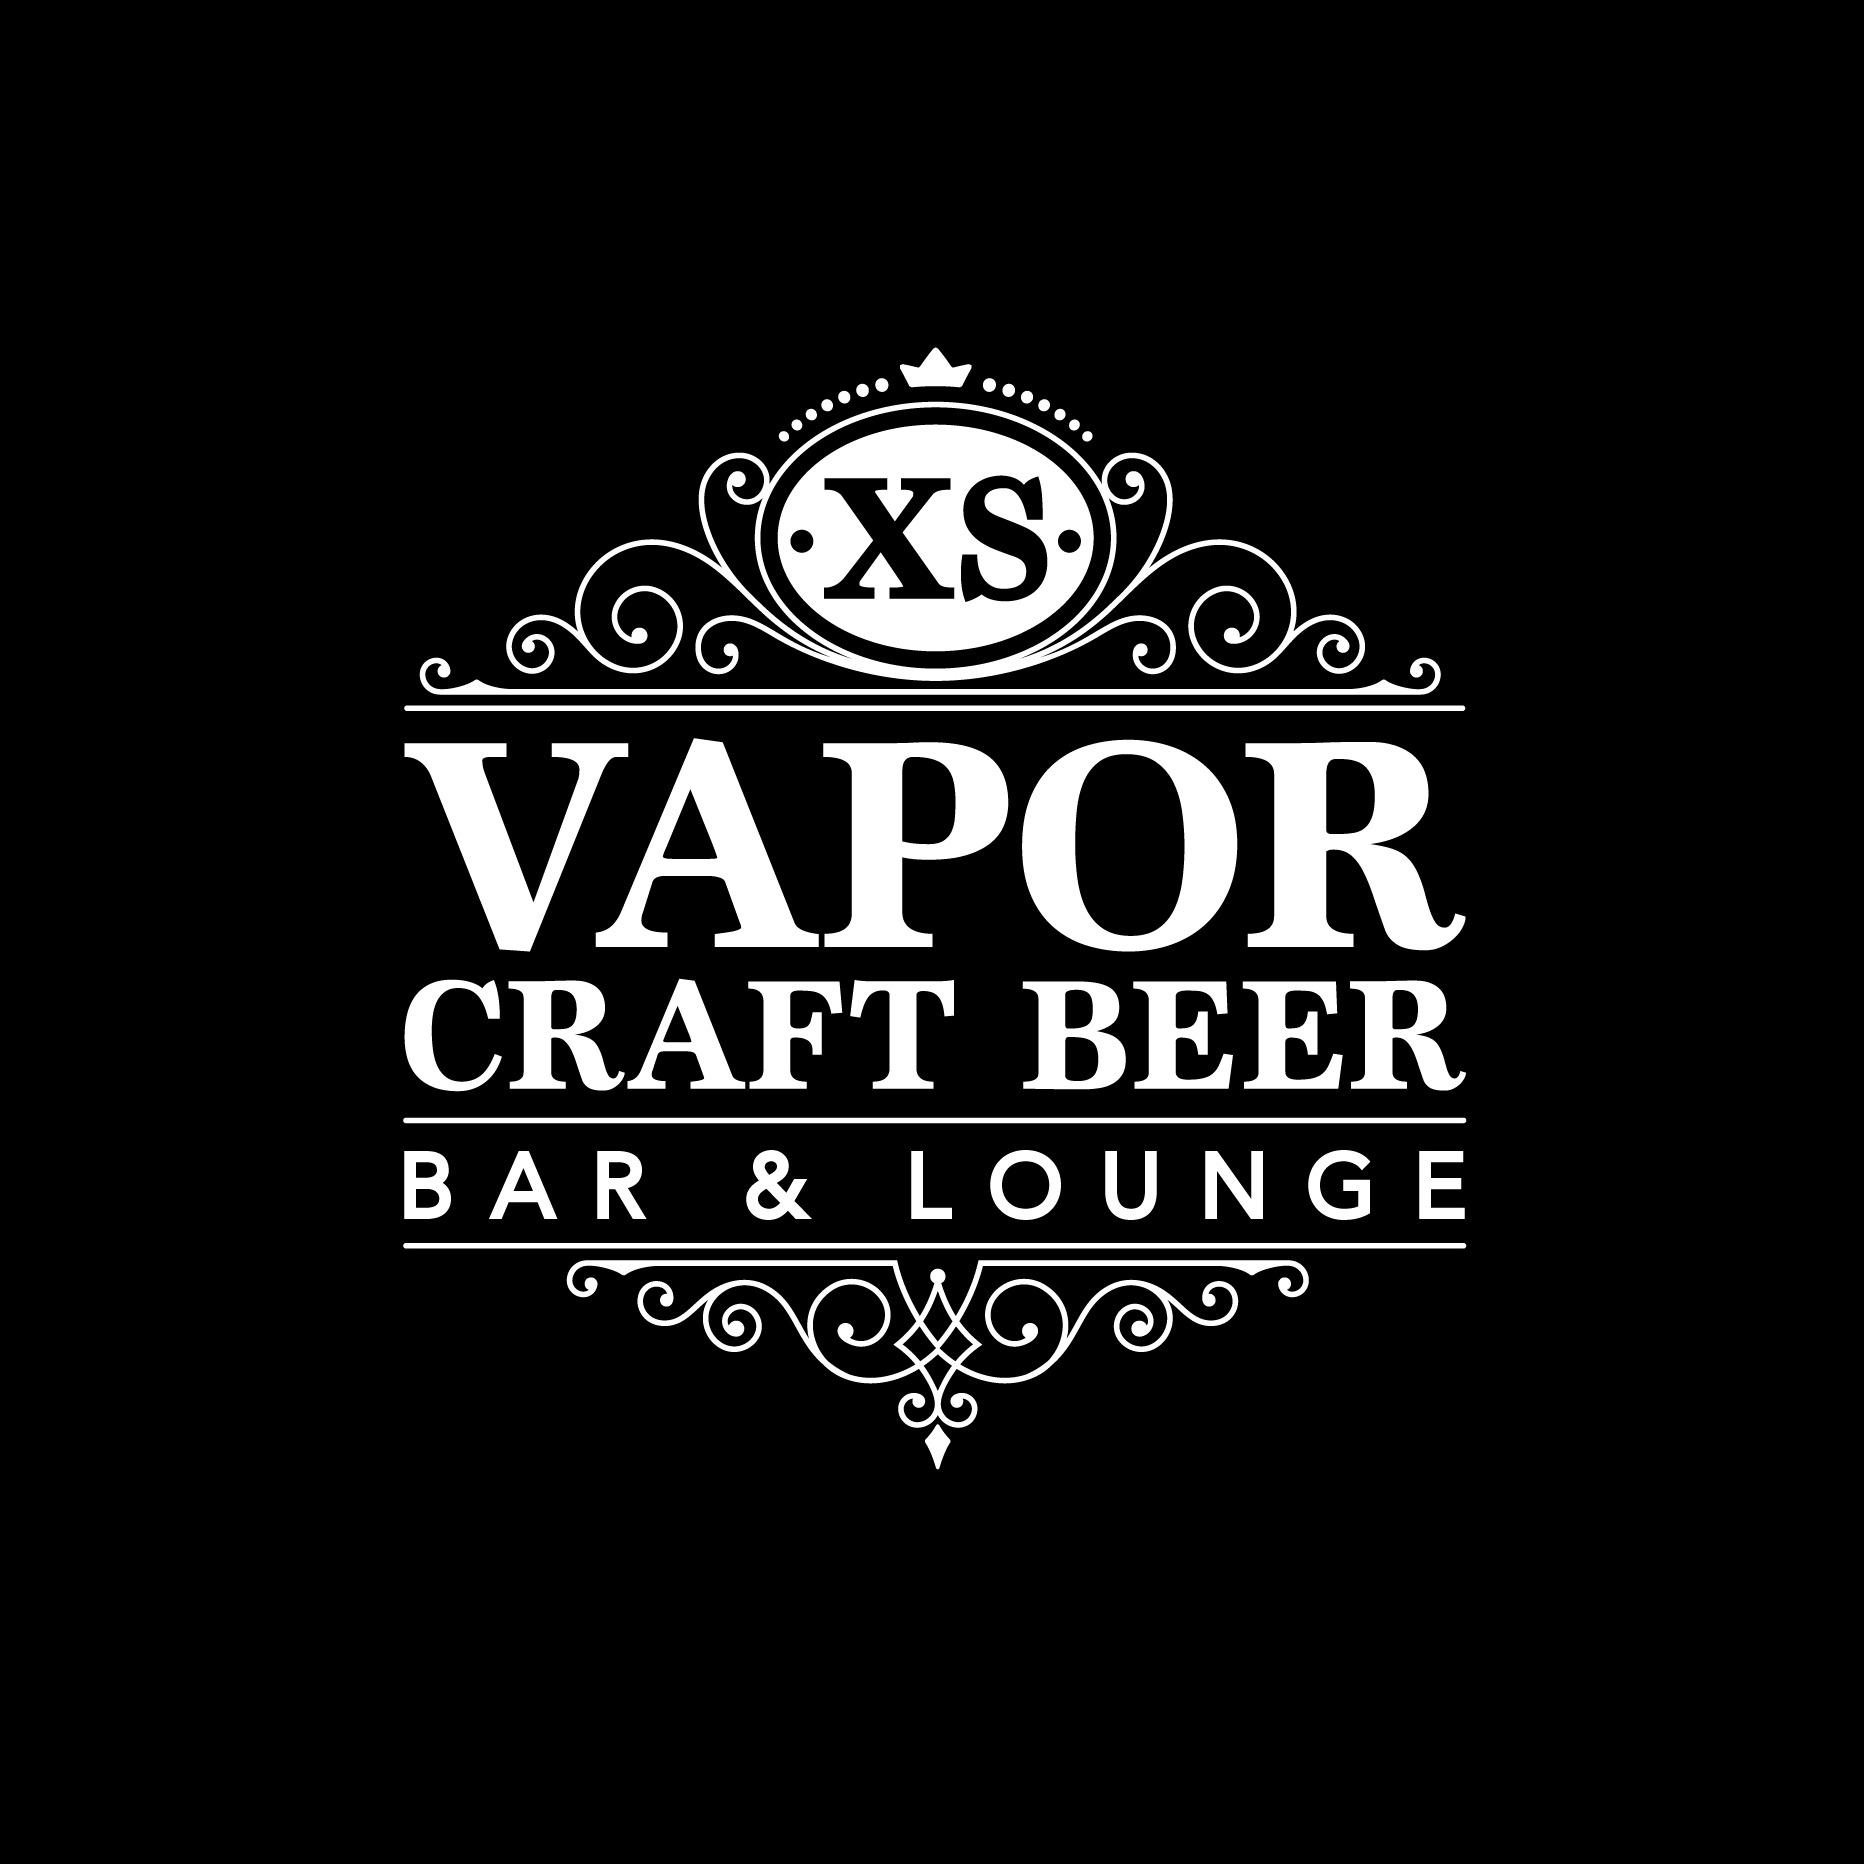 XS Vapor Craft Beer Bar and Lounge Logo